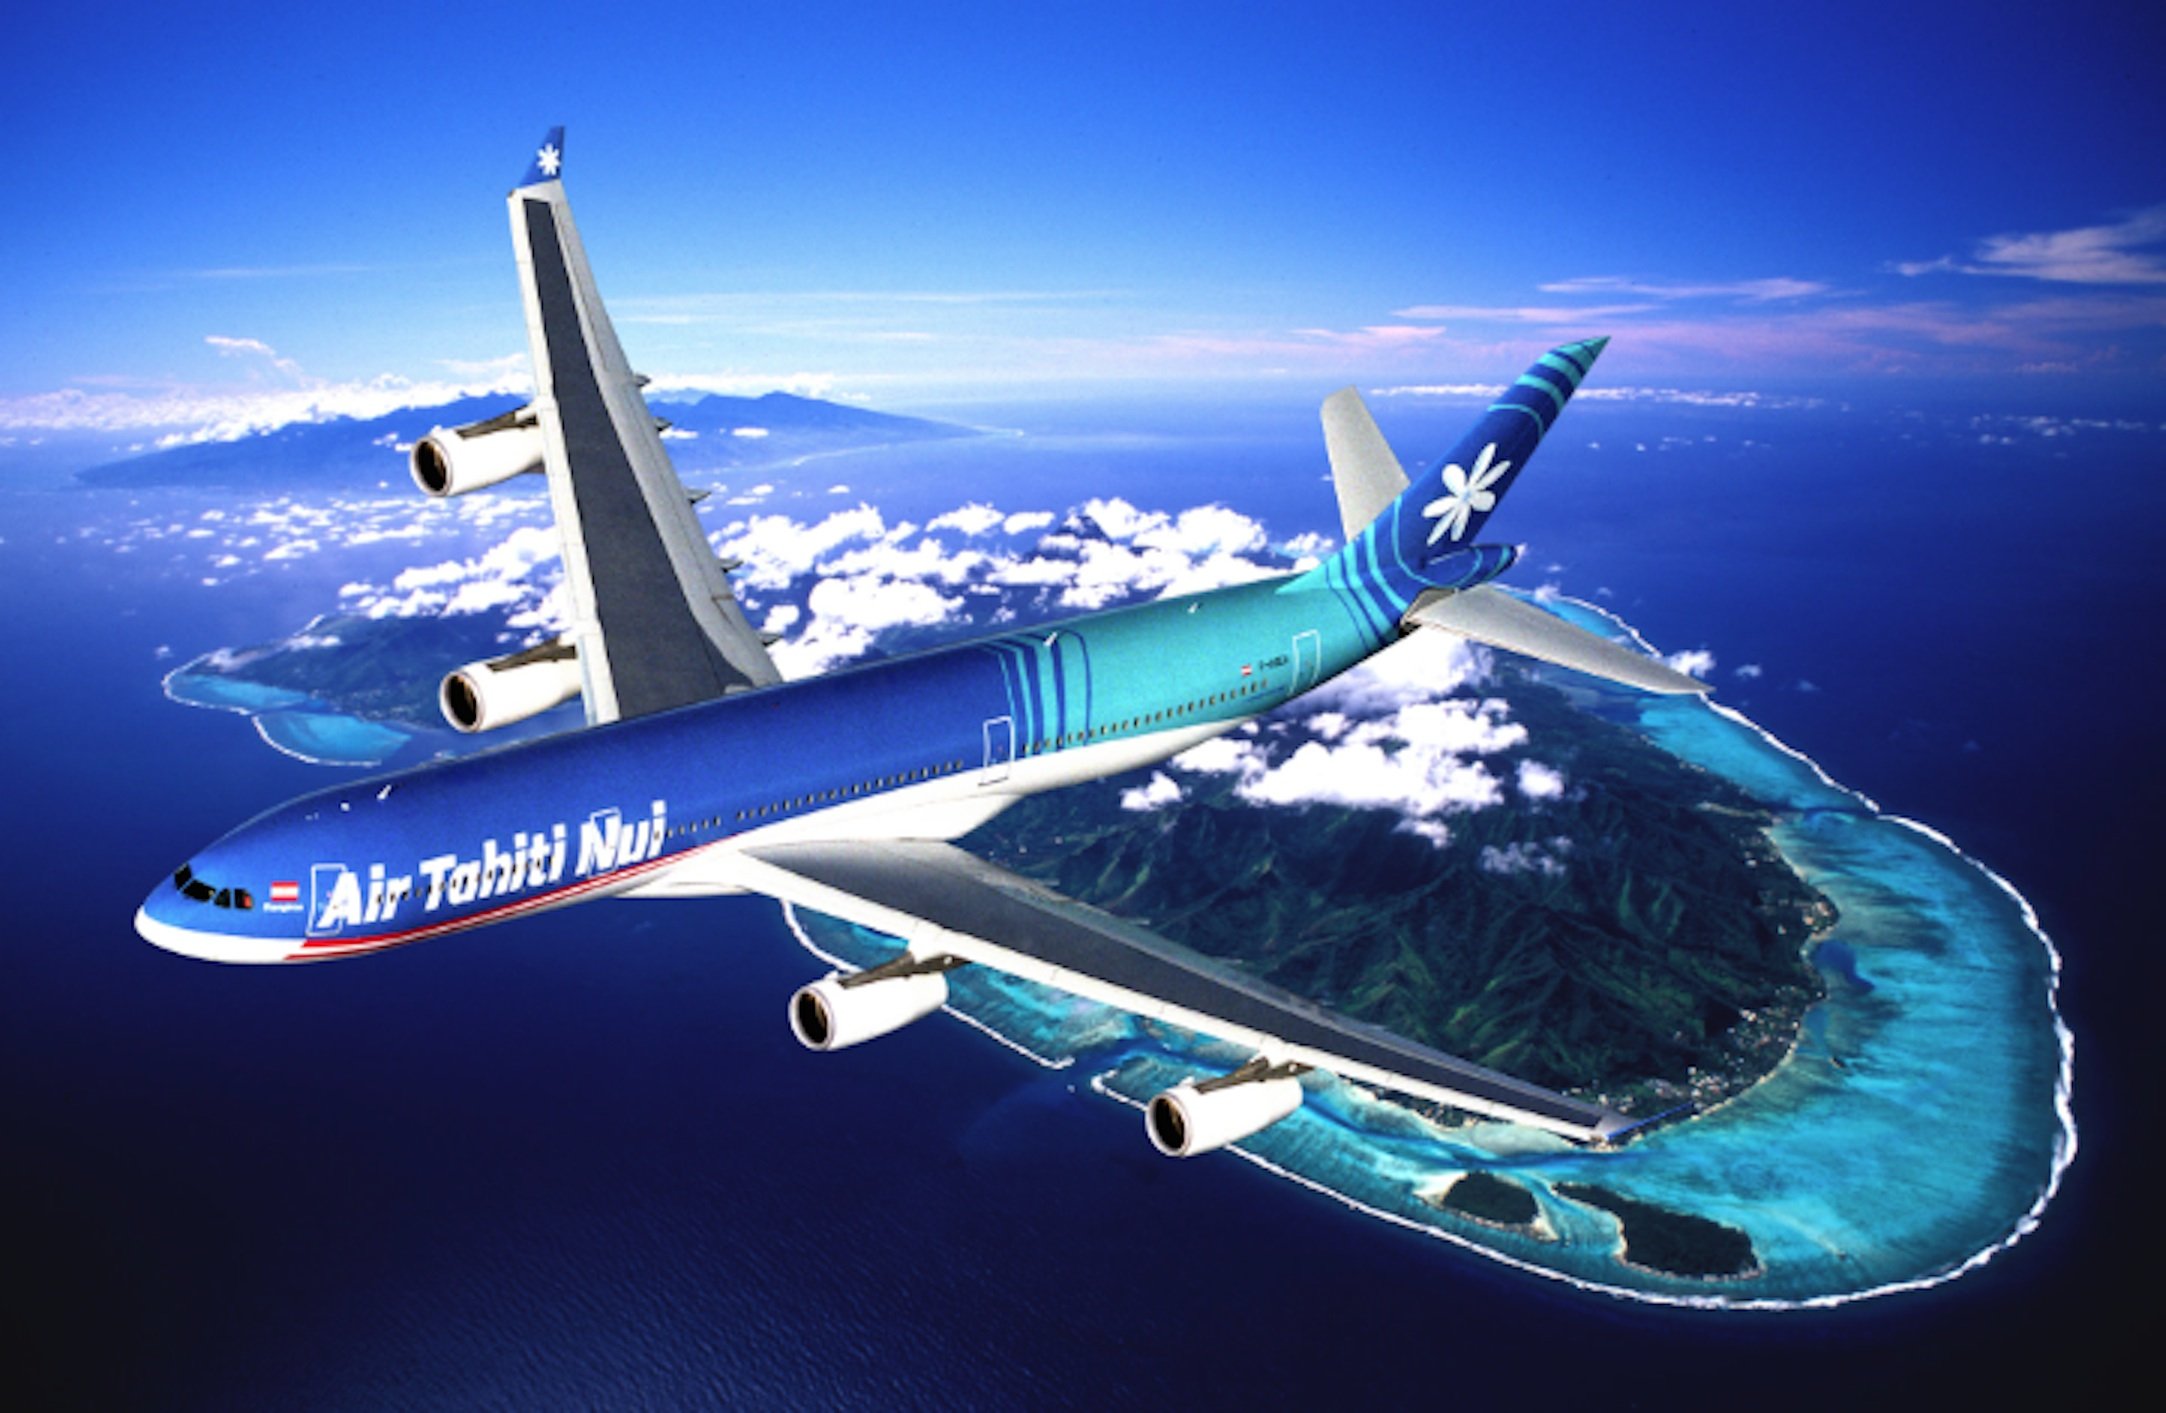 Air Tahiti Nui flight